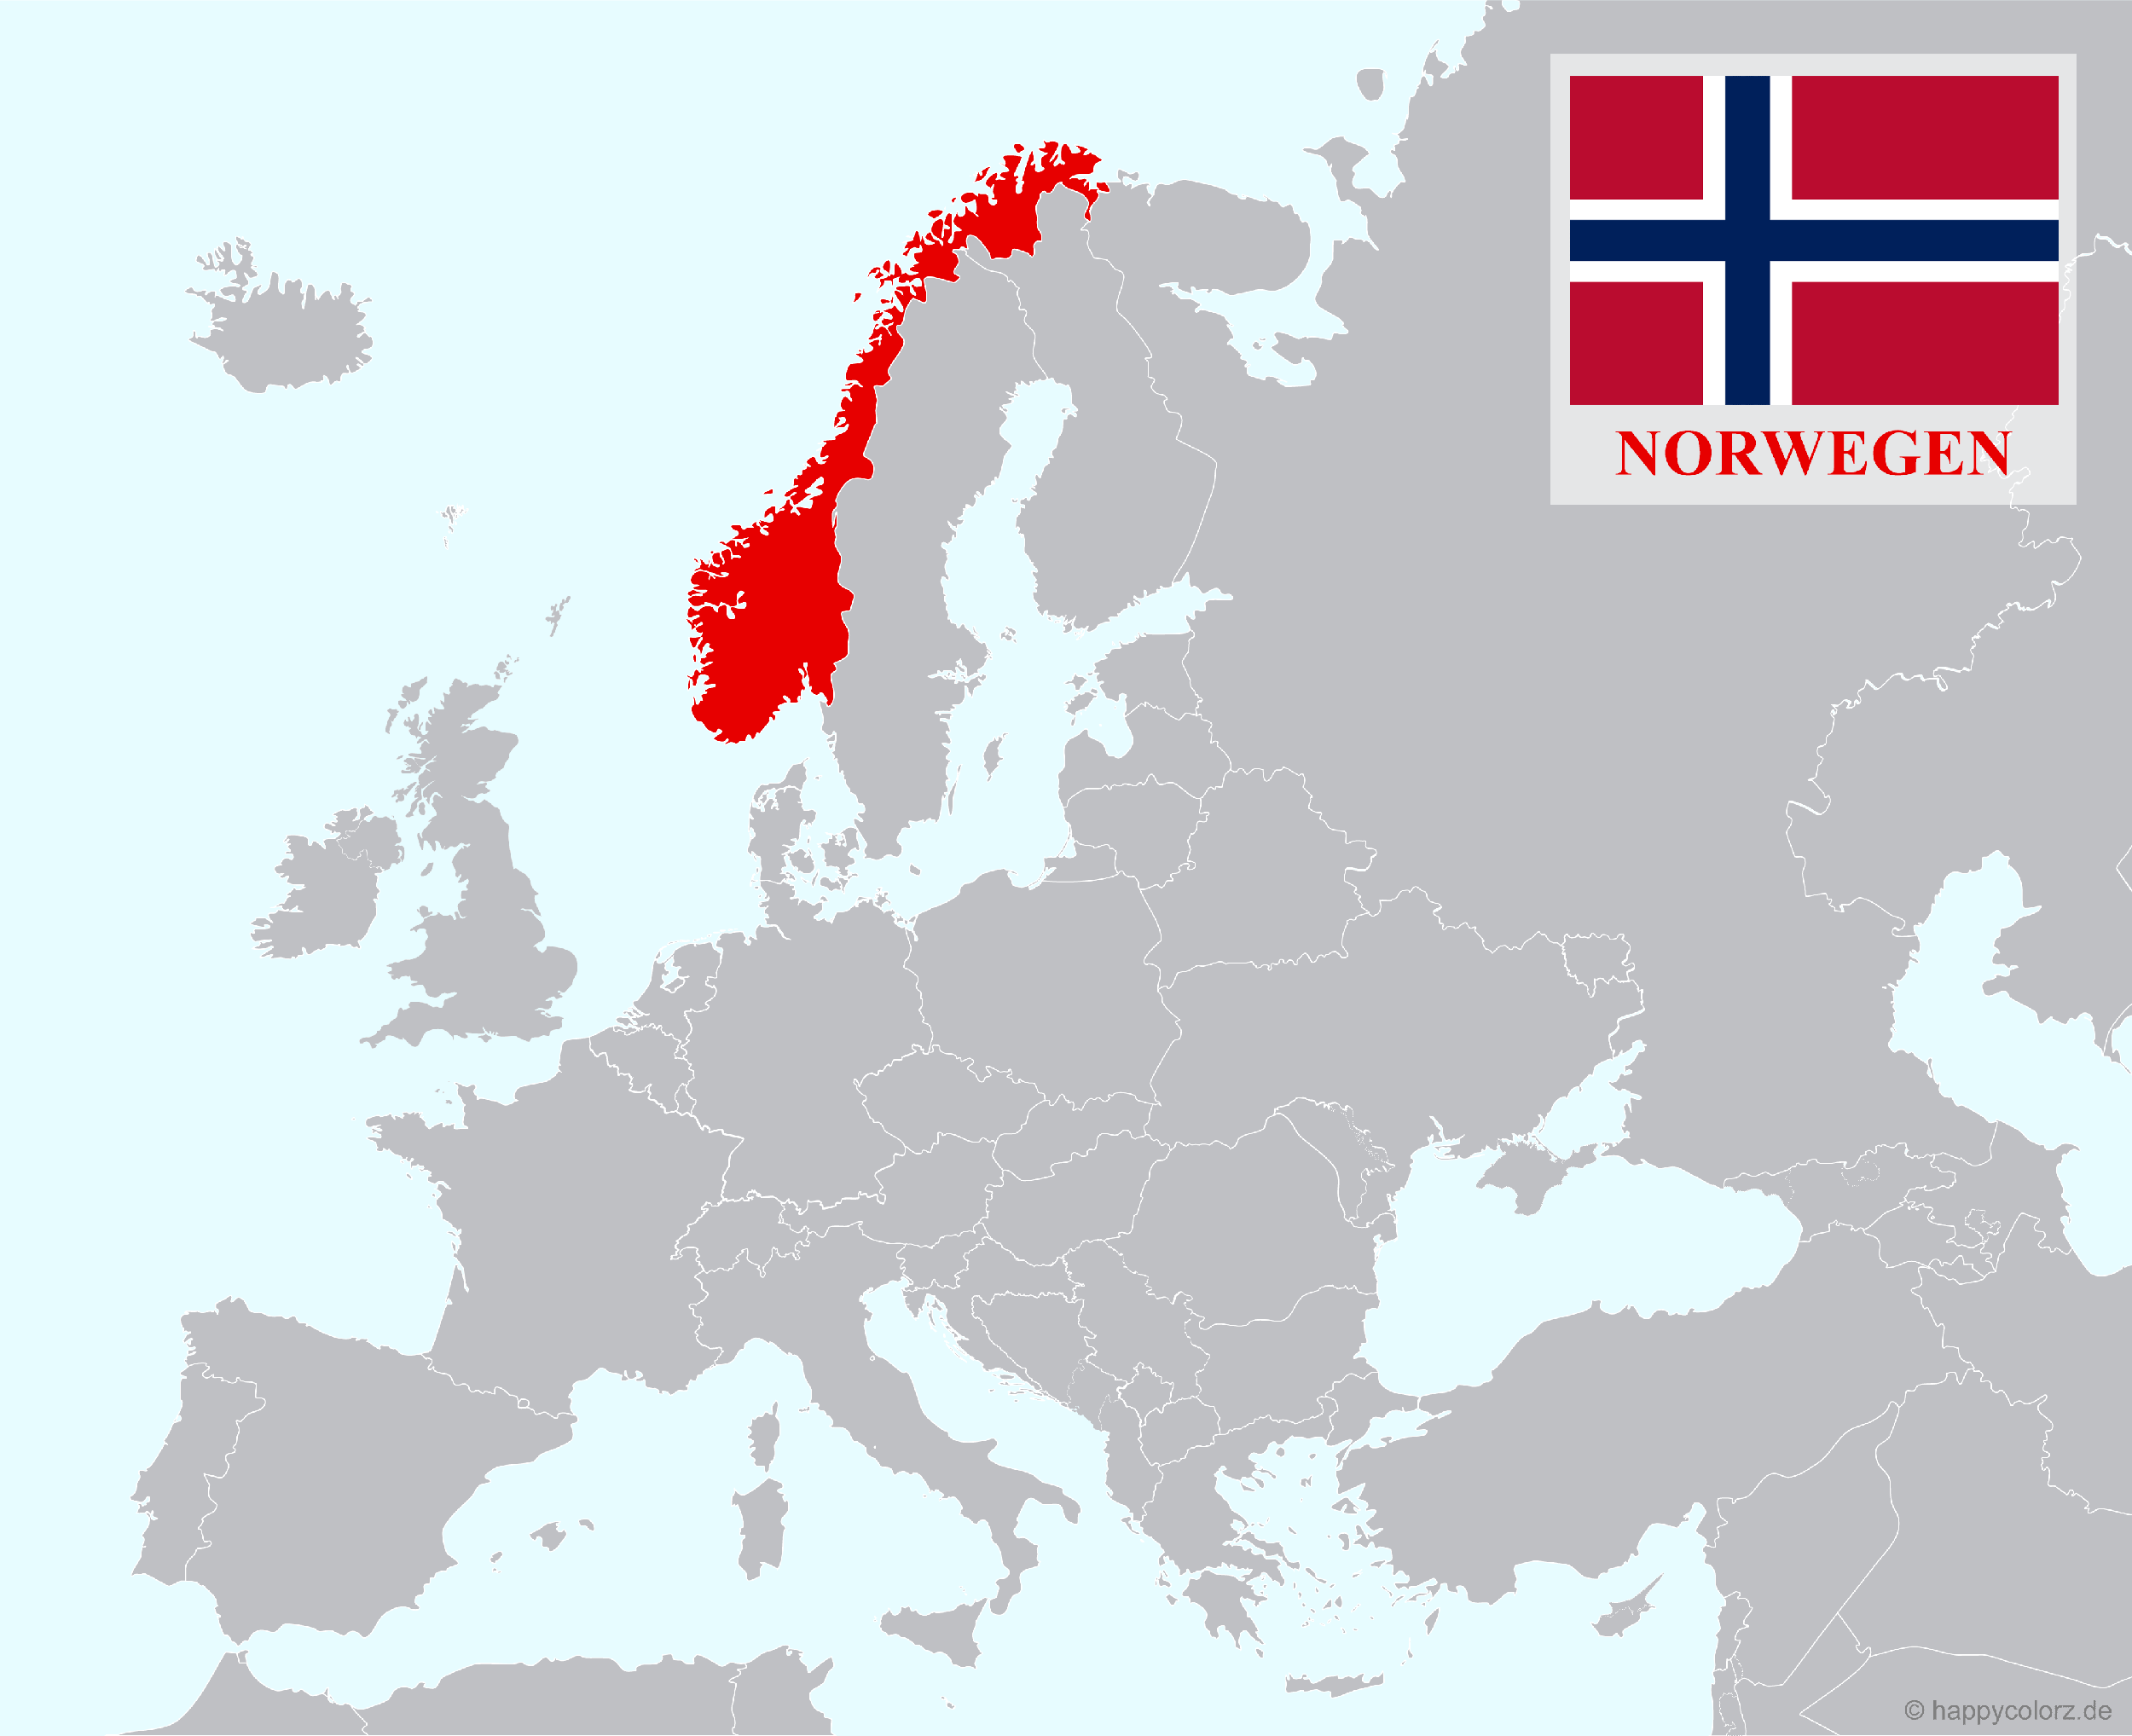 Europakarte mit Norwegen als hervorgehobenes Land